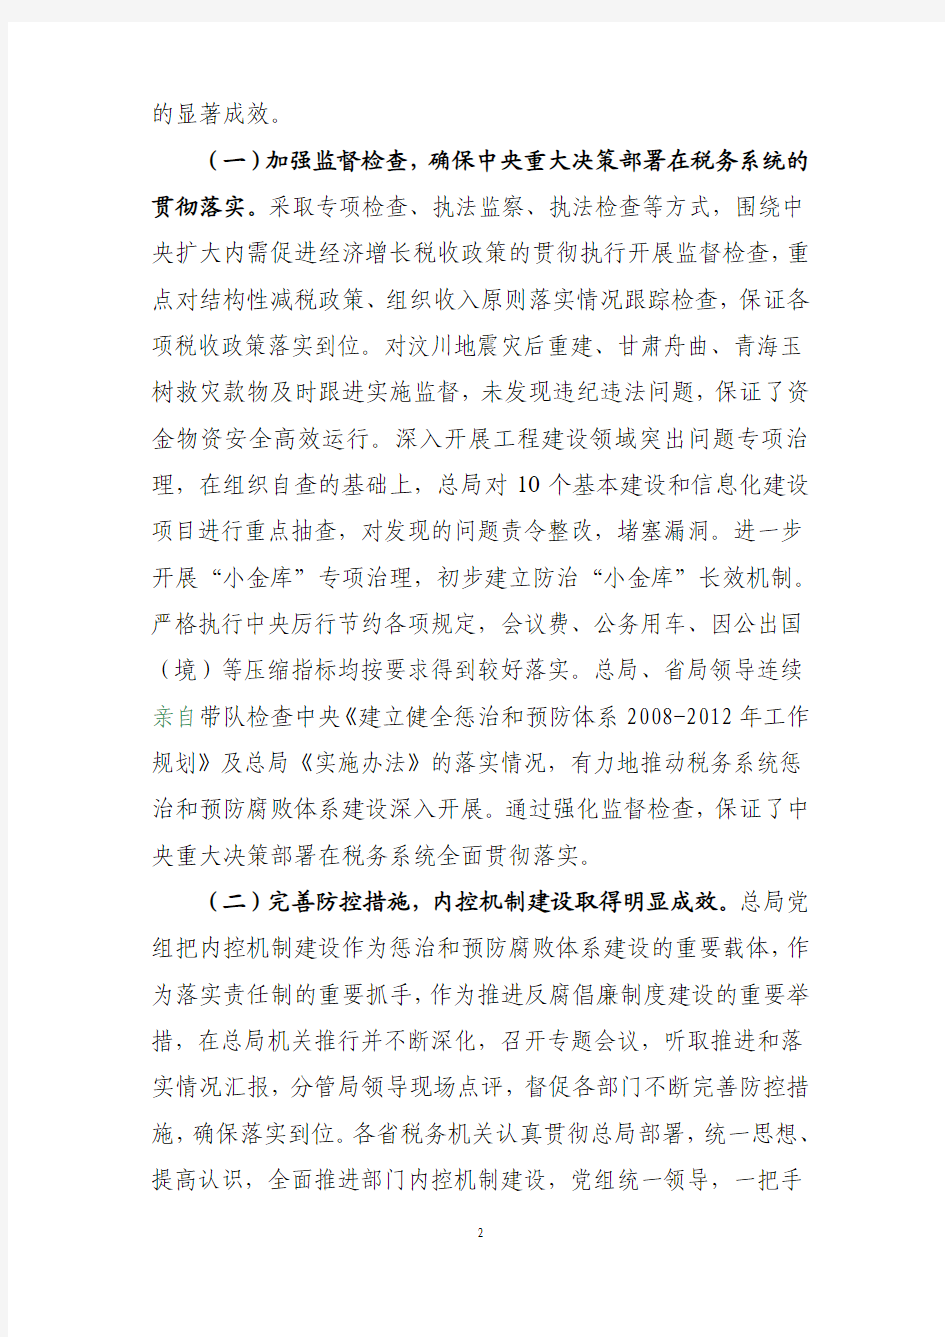 冯惠敏在2011年全国税务系统党风廉政建设工作会议上的报告